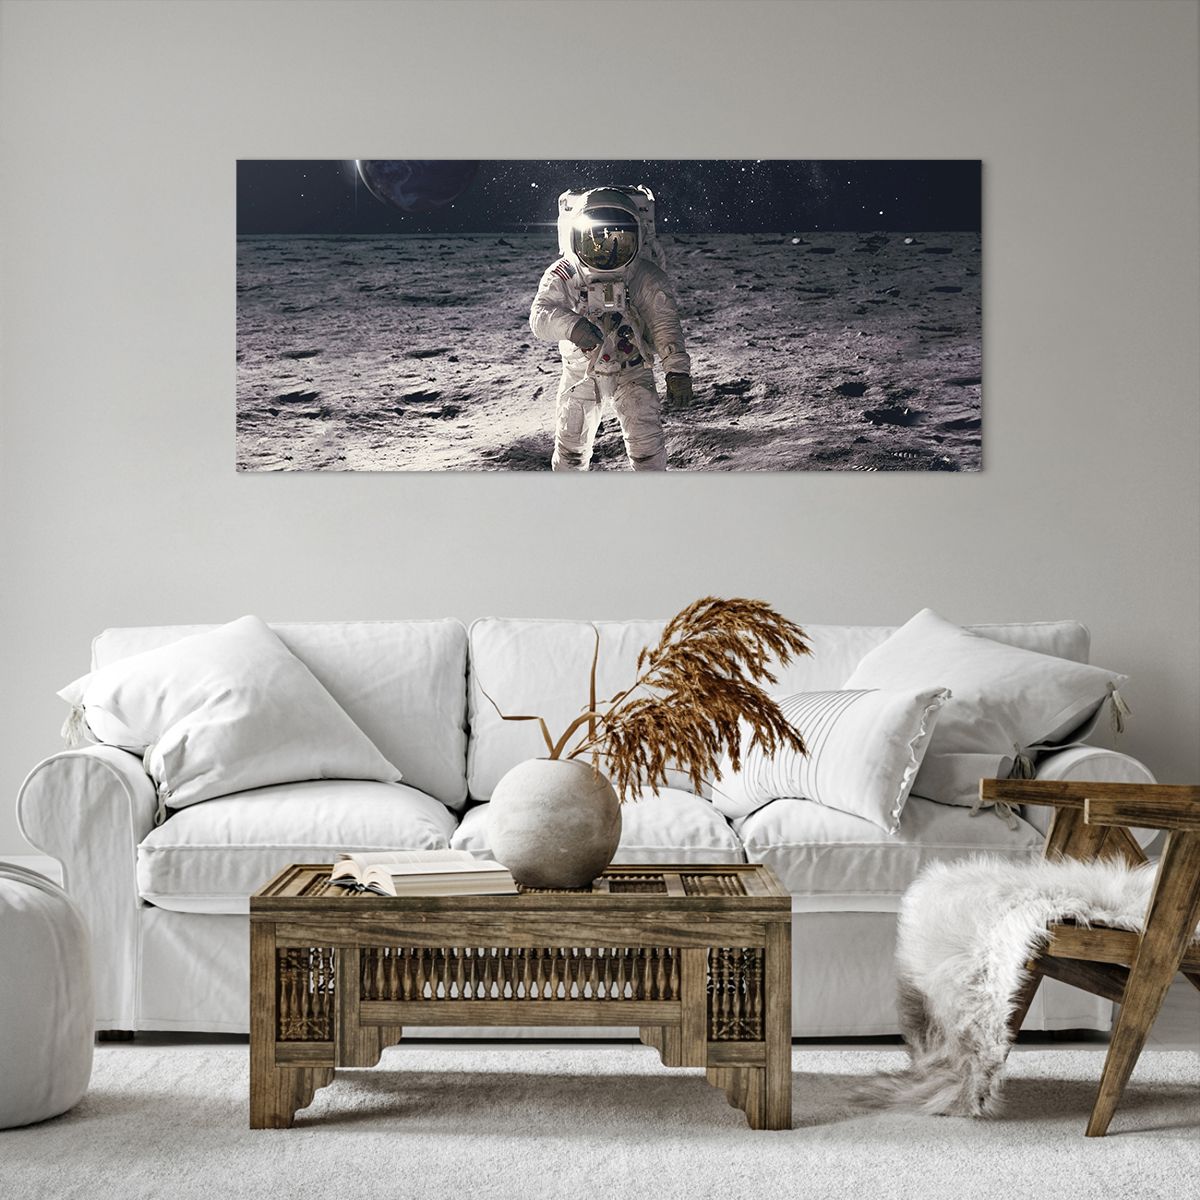 Billede på lærred Abstraktion, Billede på lærred Mand På Månen, Billede på lærred Astronaut, Billede på lærred Kosmos, Billede på lærred Måne